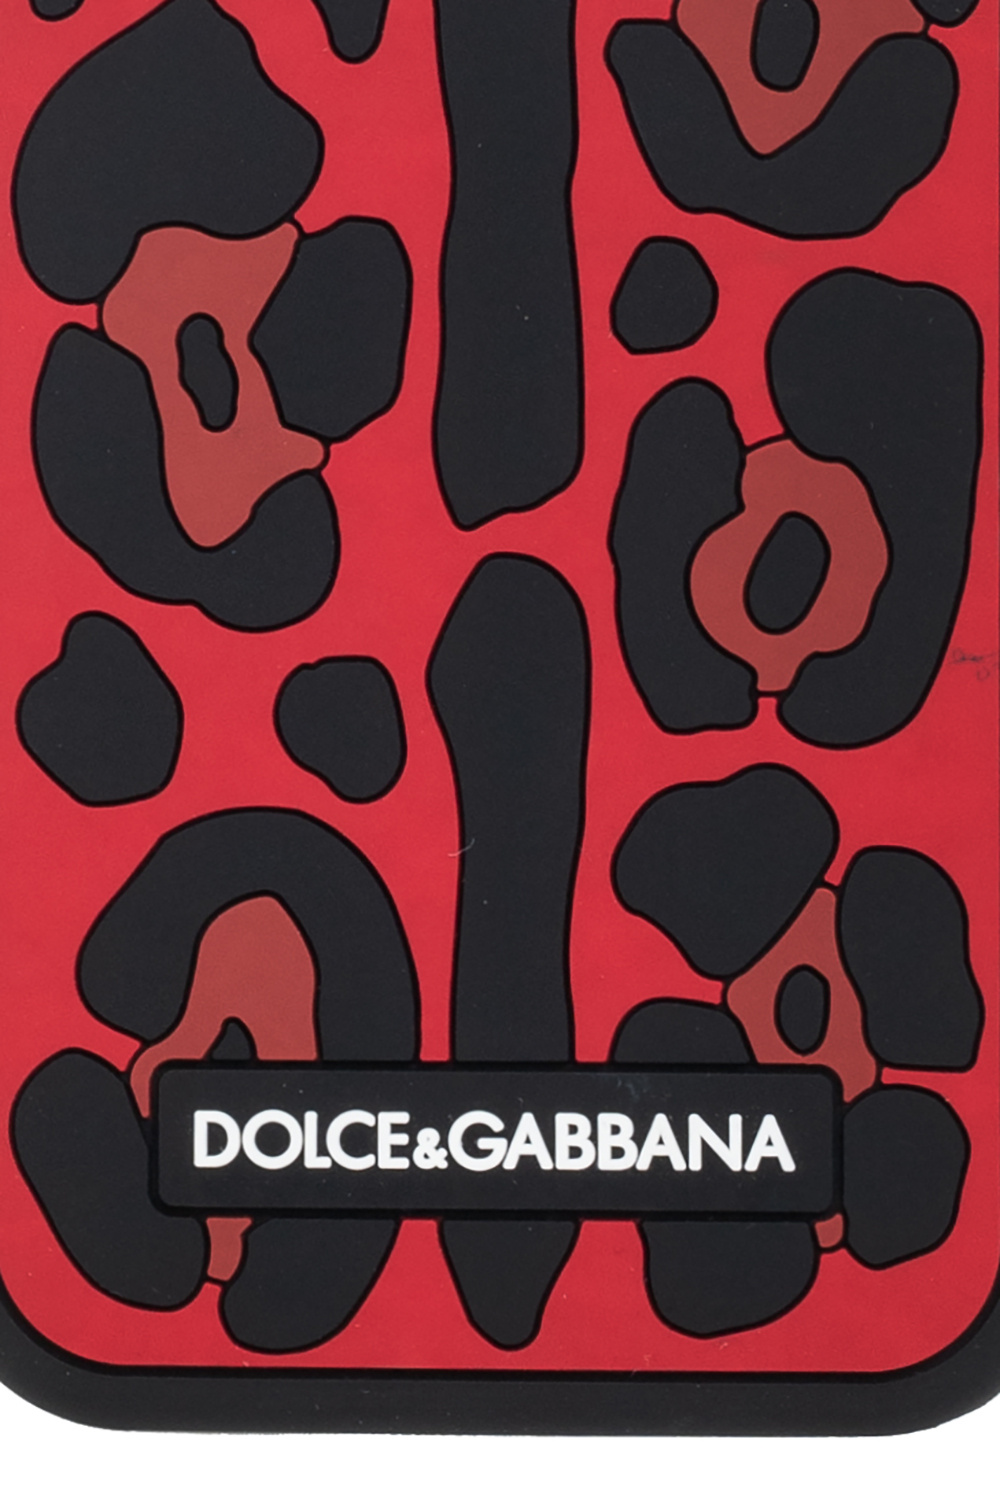 Dolce & Gabbana Dolce & Gabbana snakeskin-effect iPhone 11 Pro Max case